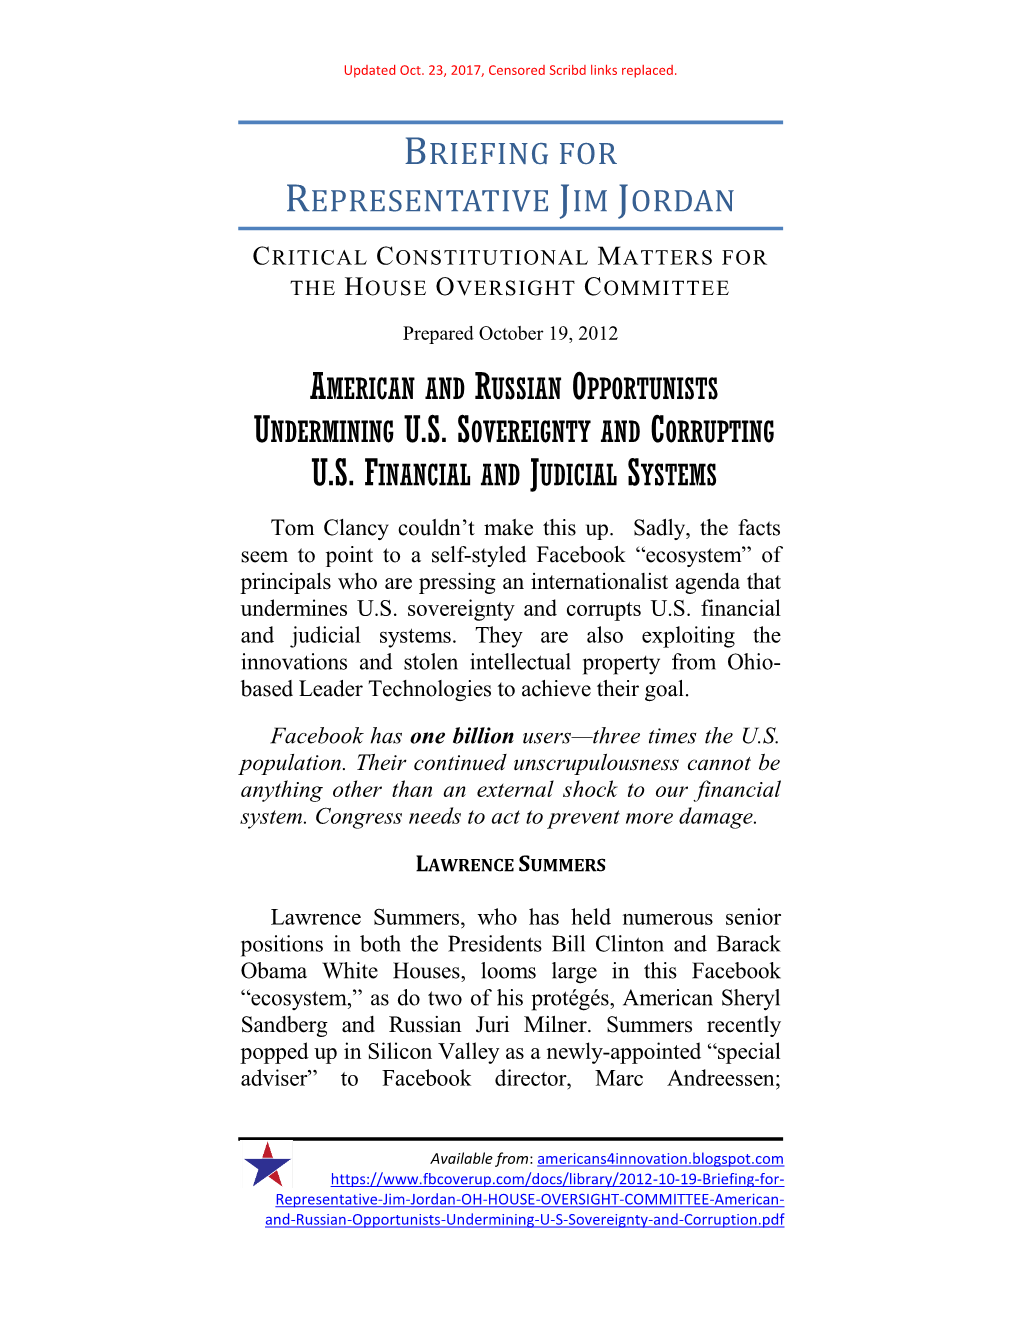 Briefing for Representative Jim Jordan